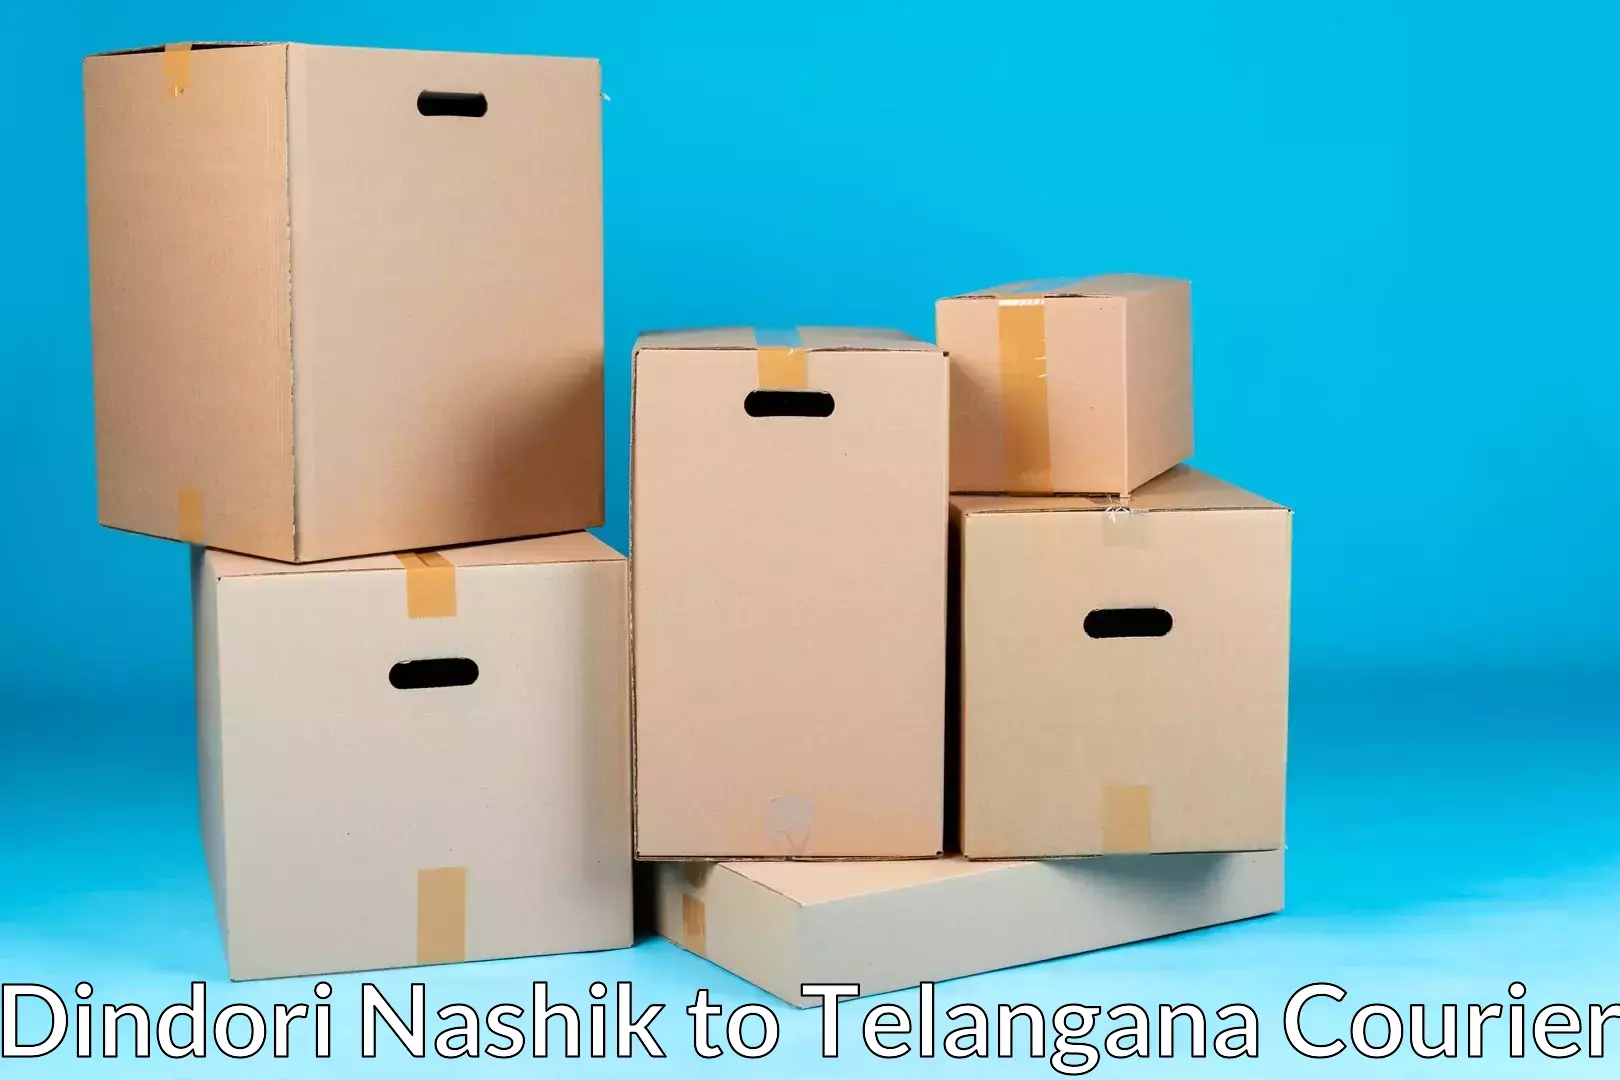 Furniture logistics Dindori Nashik to Kalwakurthy